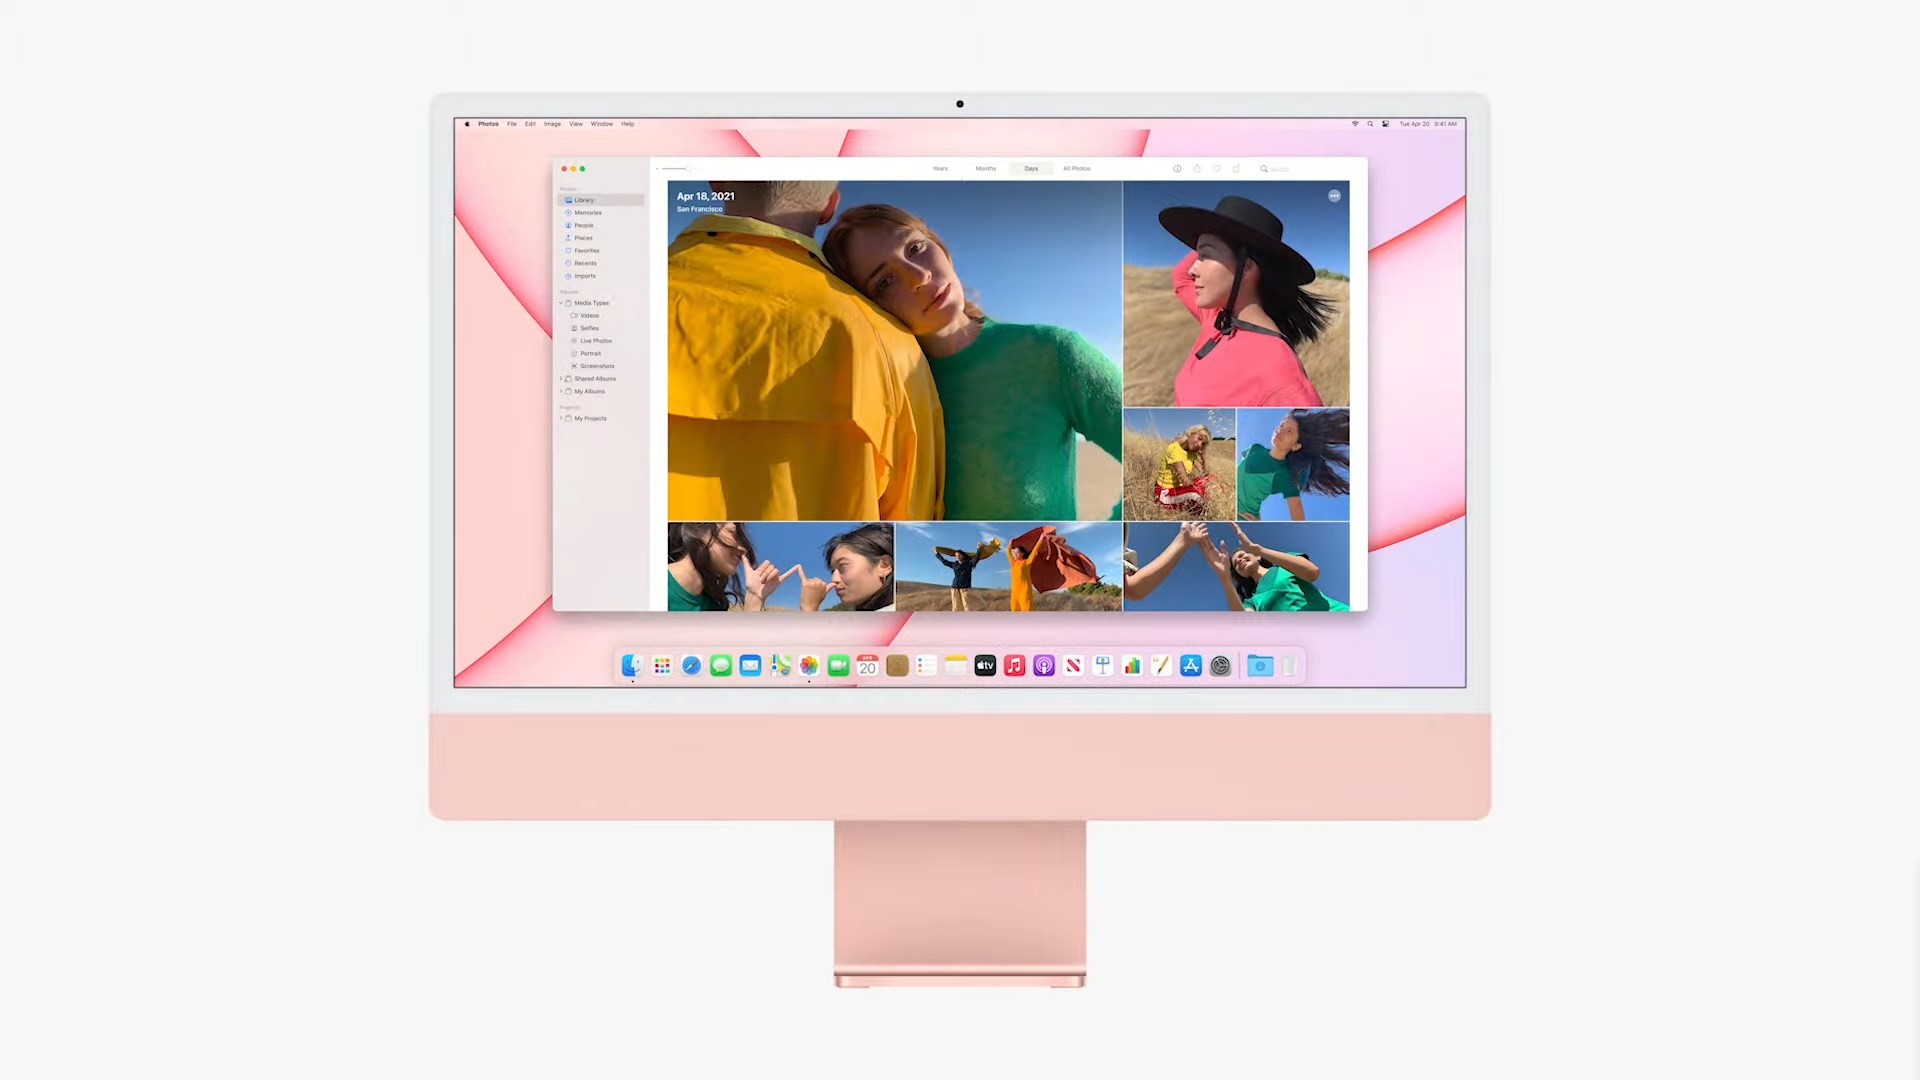 Imac 2021 : Come è fatto il nuovo Apple iMac 2021 con chip ...